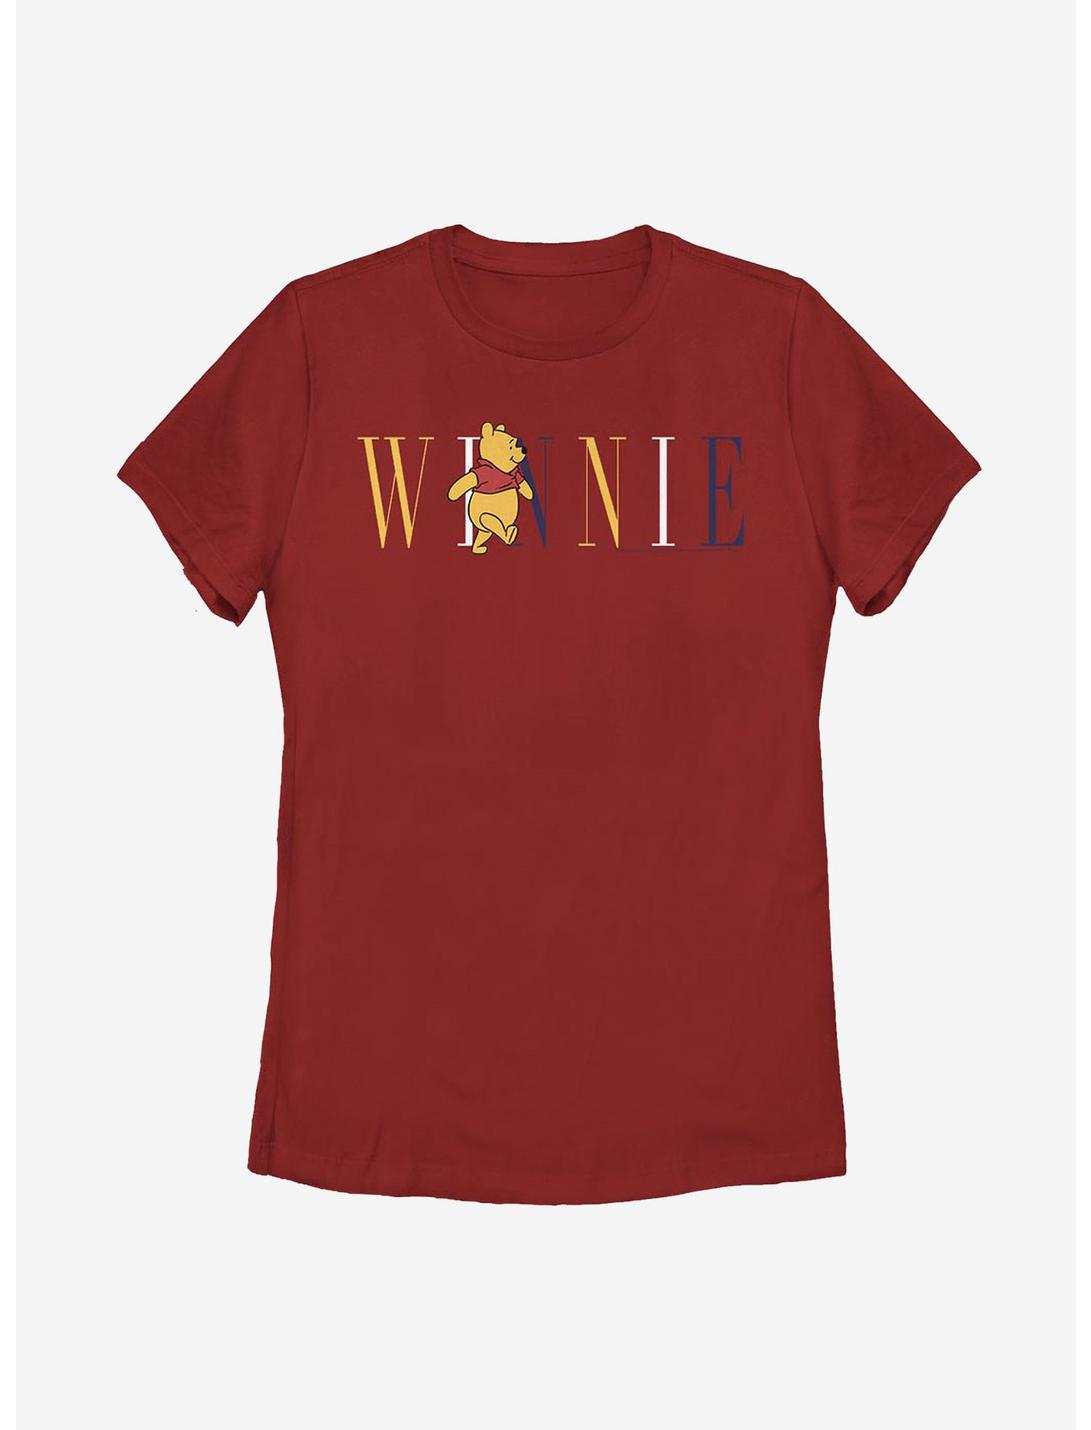 Disney Winnie The Pooh Fashion Womens T-Shirt, RED, hi-res